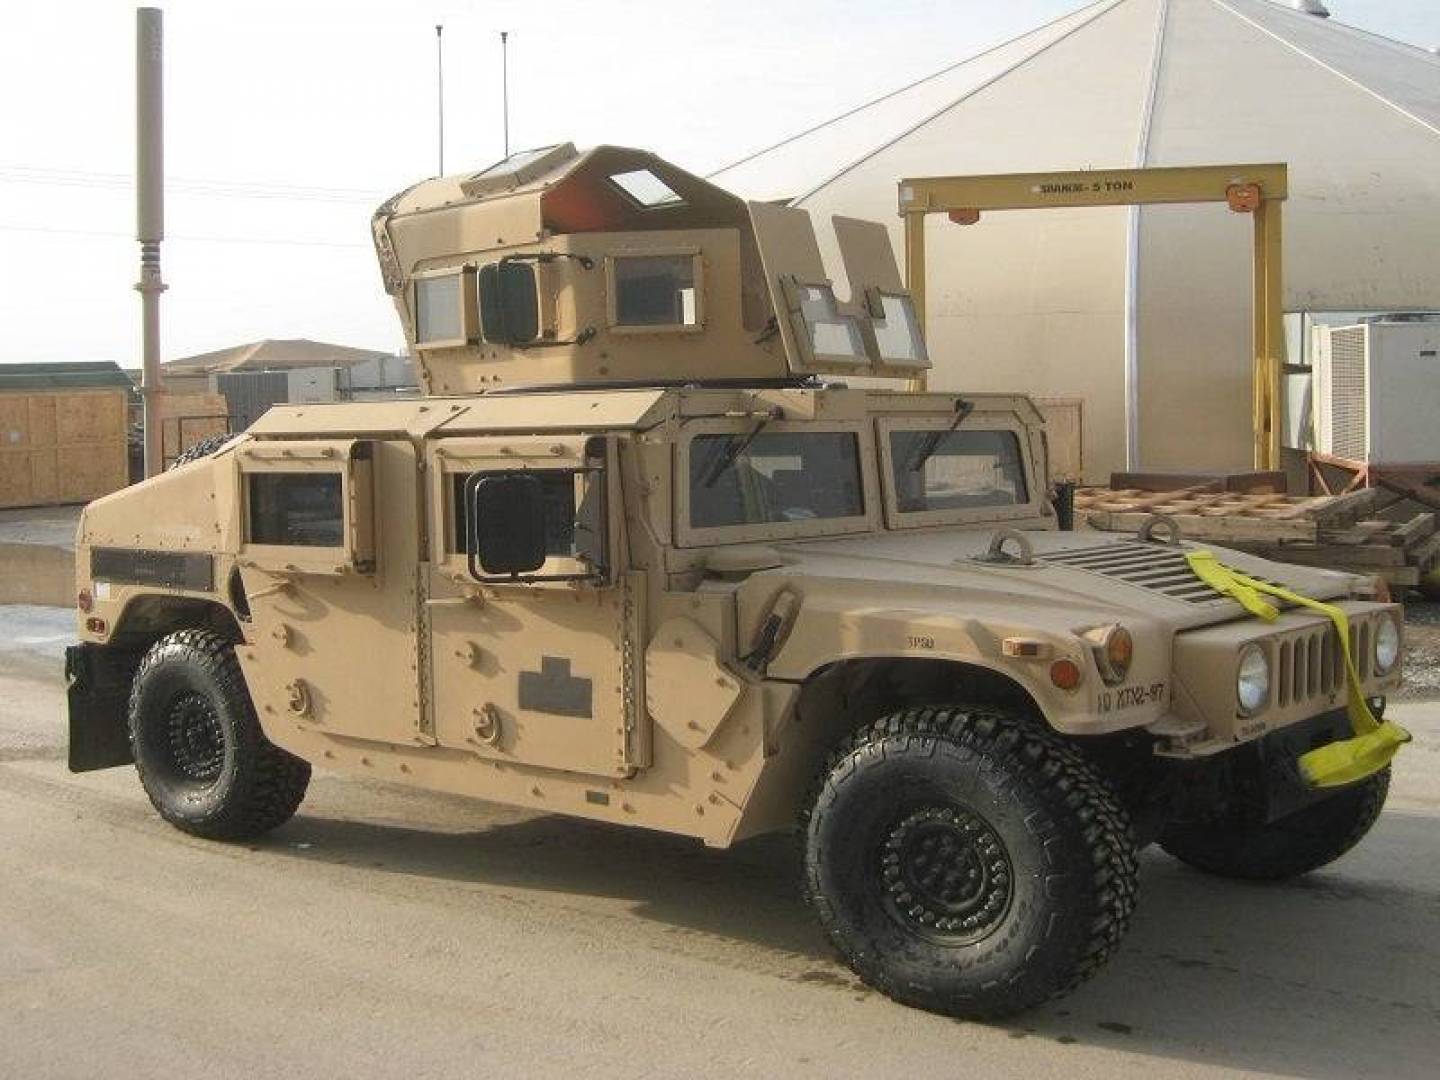 لواء المظليين الإيراني يتسلم عربات Humvee رباعية الدفع أمريكية الصنع